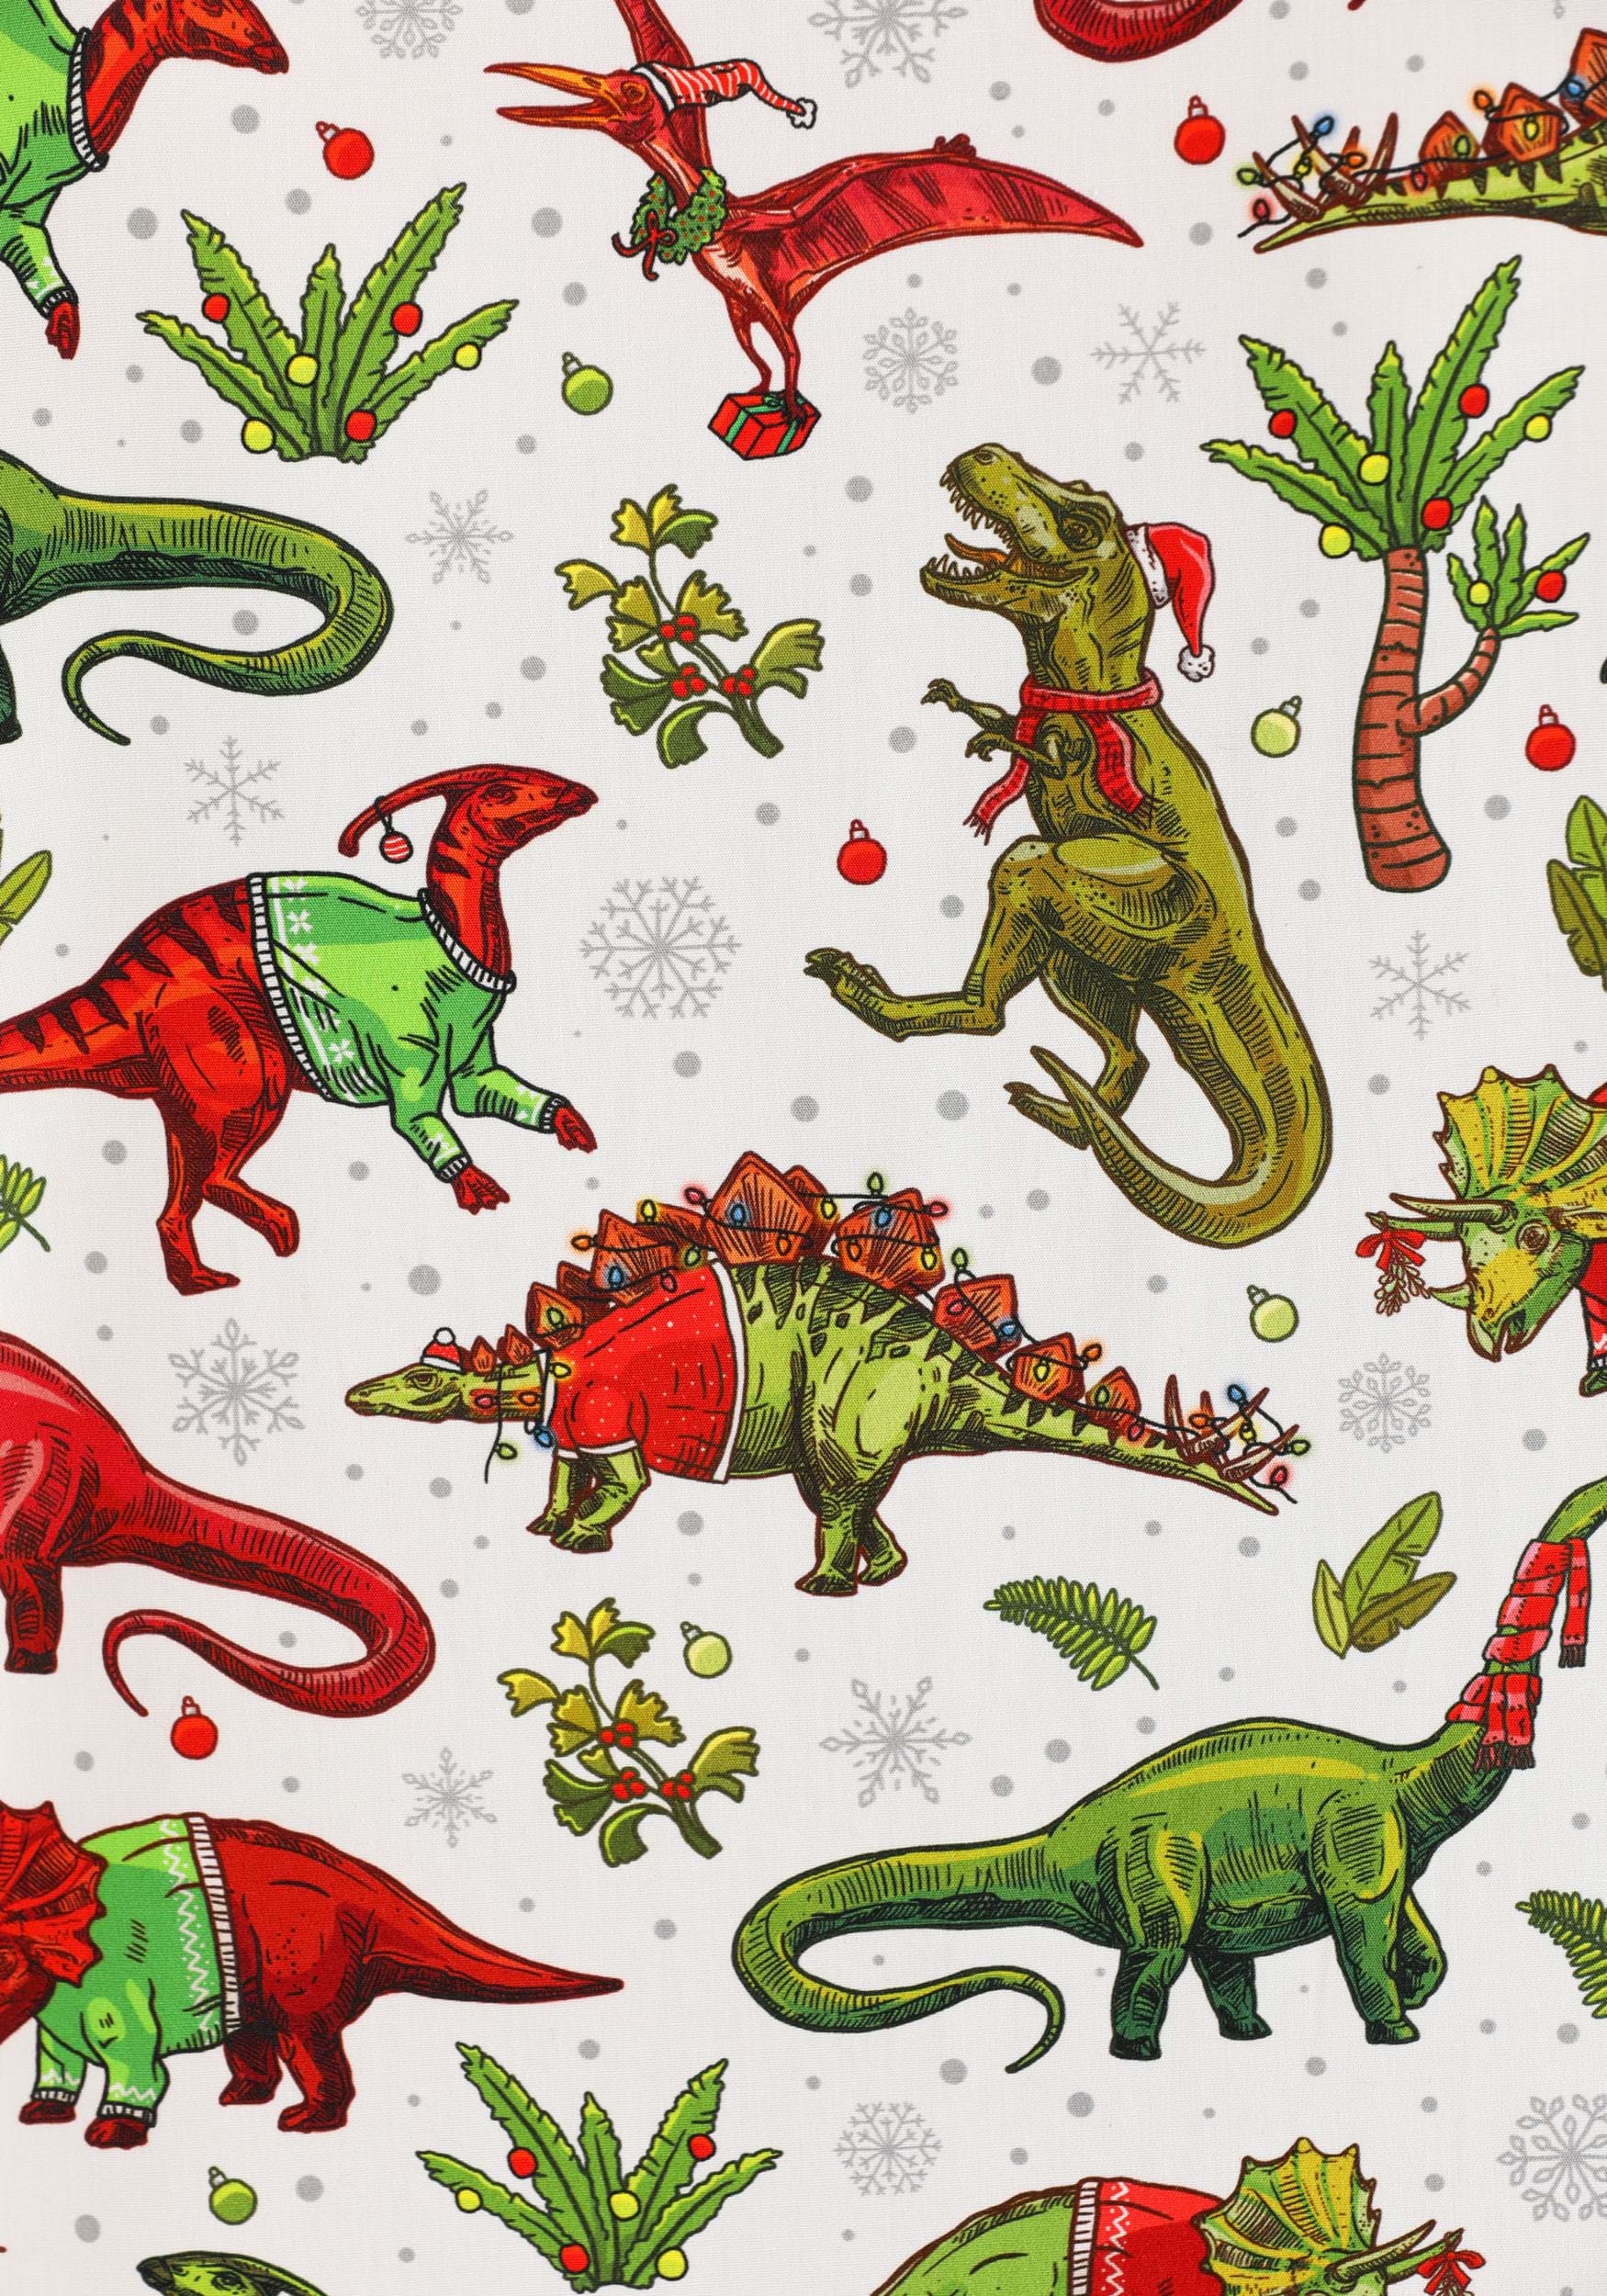 Christmas Dinosaurs Button Up Adult Shirt , Holiday Christmas Shirts